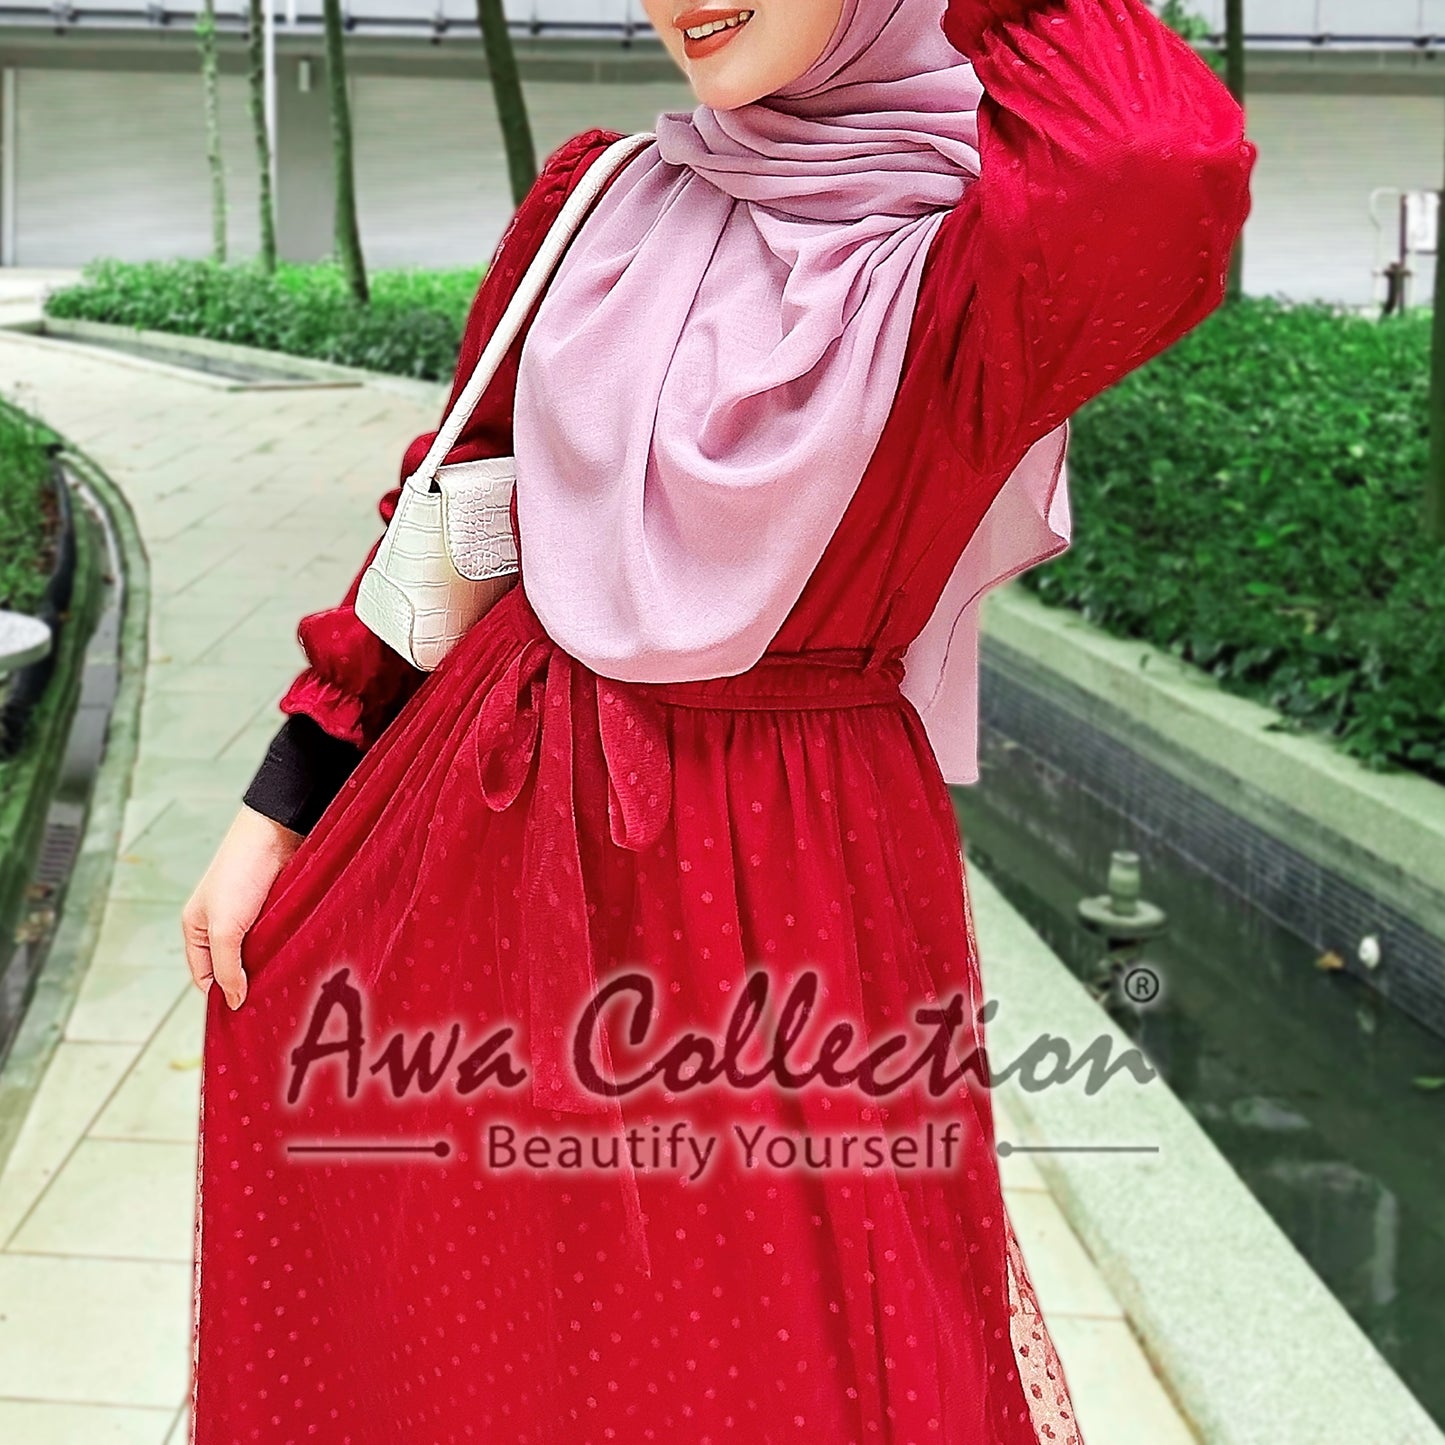 LALEESA Awa Collection DRESS JINA DA109181 Dress Muslimah Dress Women Dress Jubah Muslimah Jubah Abaya Baju Raya 2023